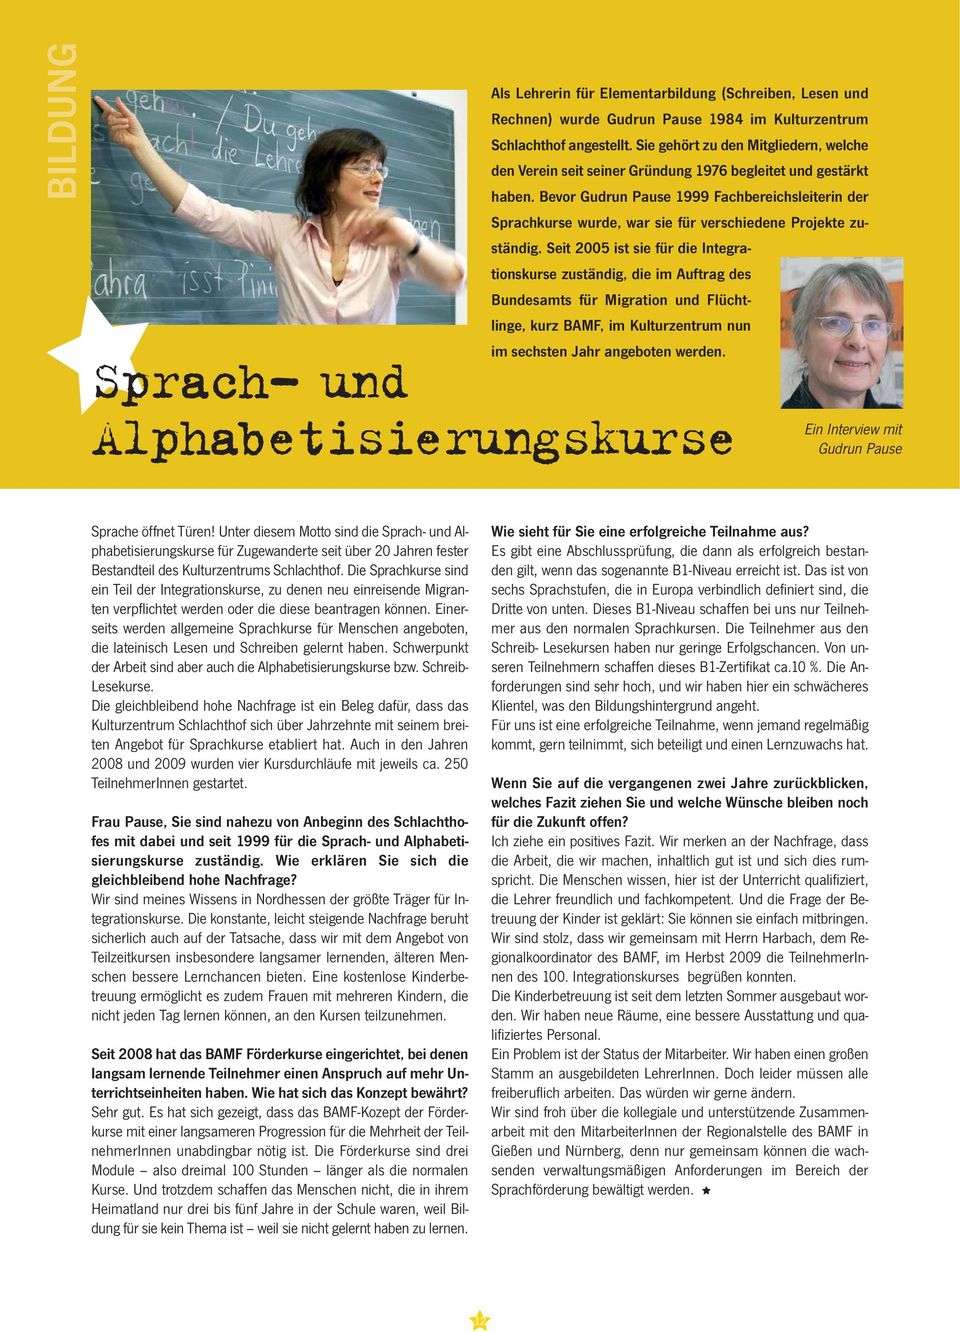 Bevor Gudrun Pause 1999 Fachbereichsleiterin der Sprachkurse wurde, war sie für verschiedene Projekte zuständig.